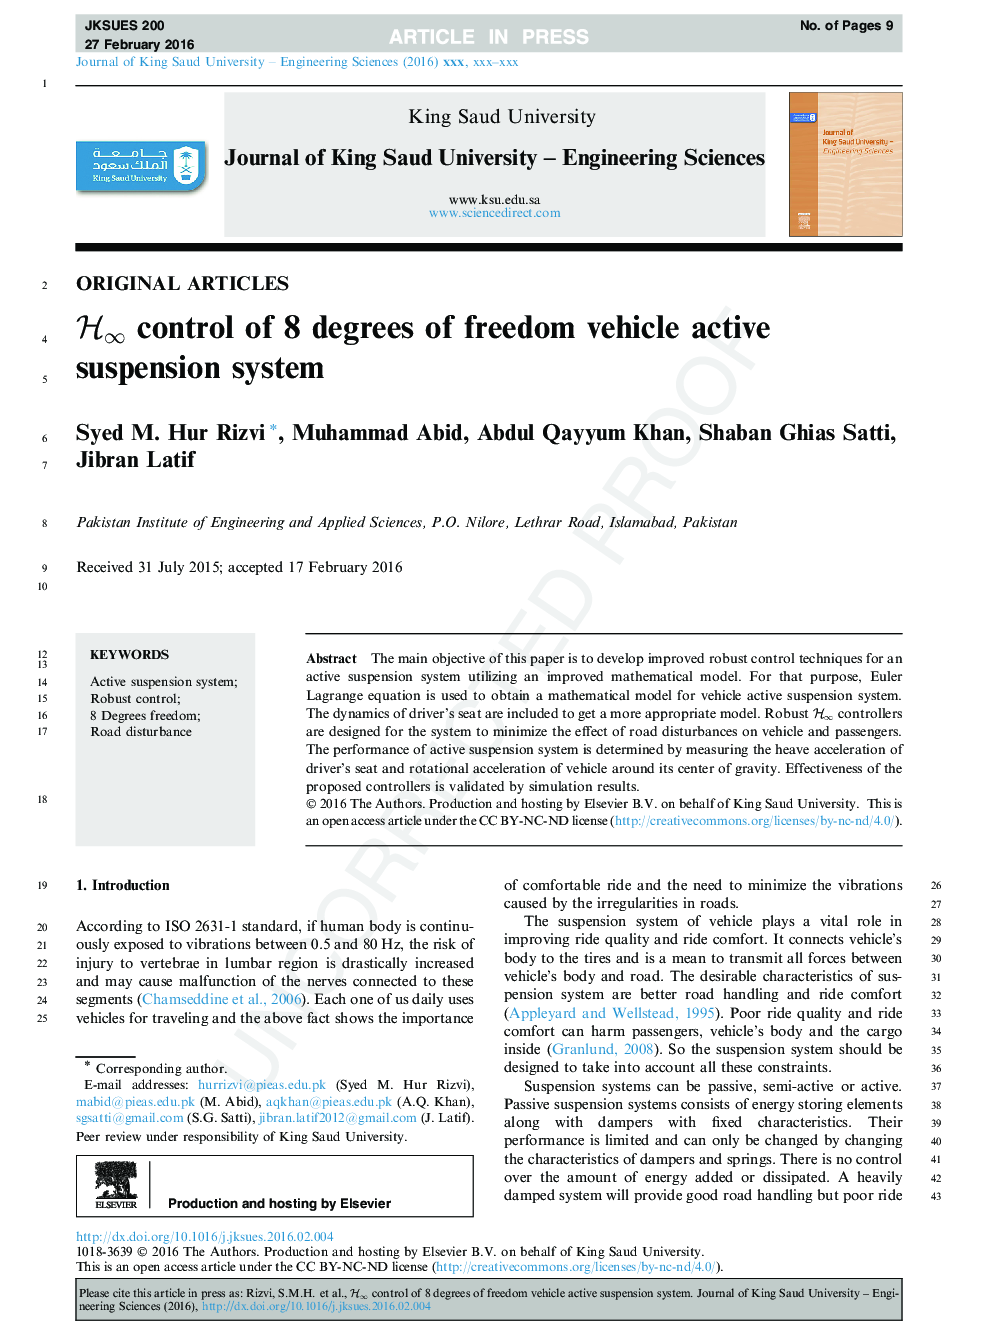 Hâ control of 8 degrees of freedom vehicle active suspension system